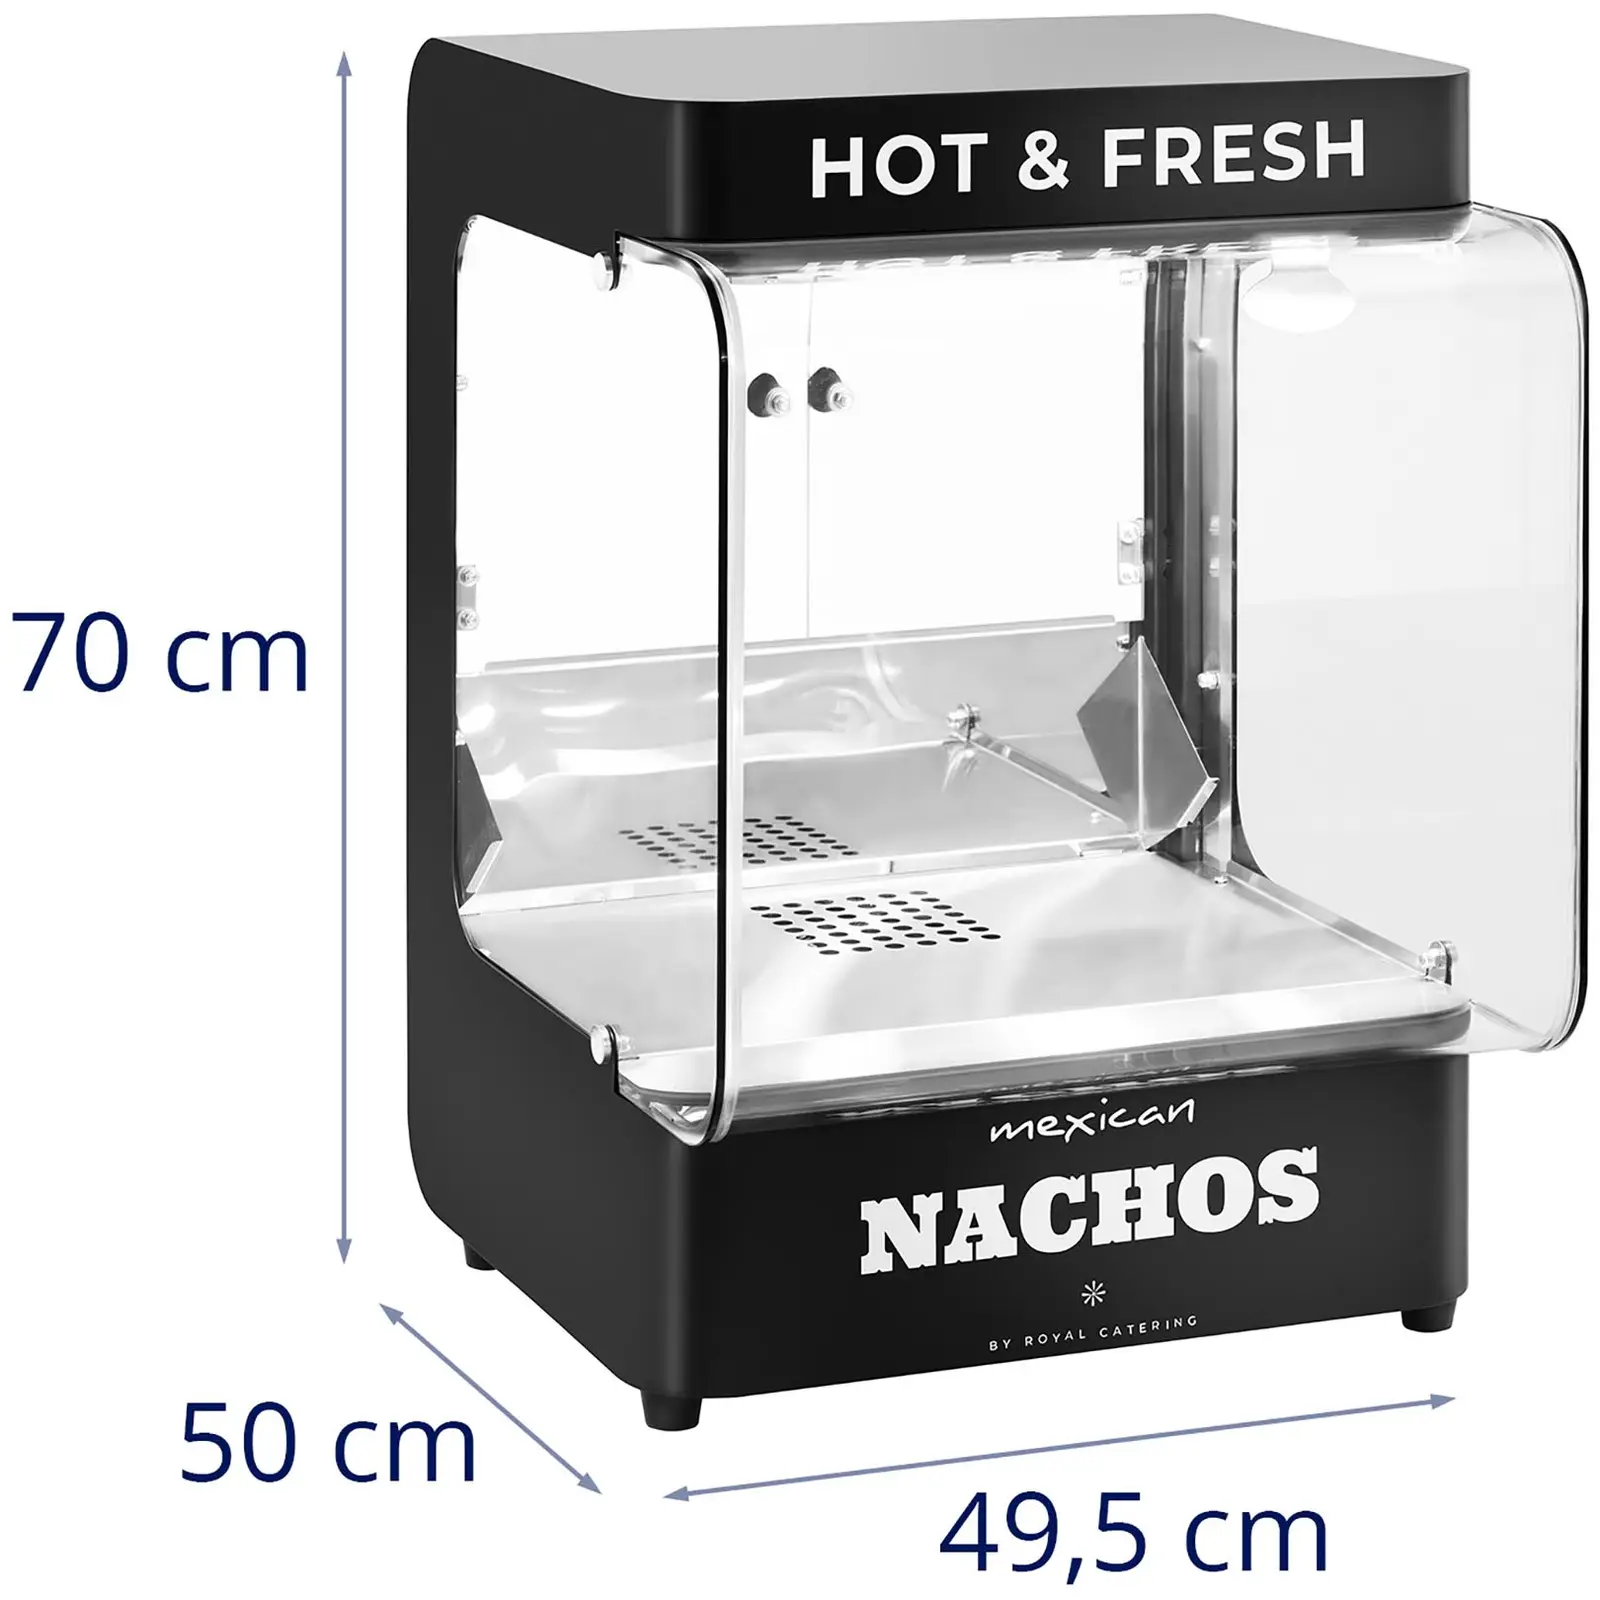 Profesionalni segrevalnik nacha - sodoben - dizajn 99 l - 50 - 60 °C - črna - Royal Catering